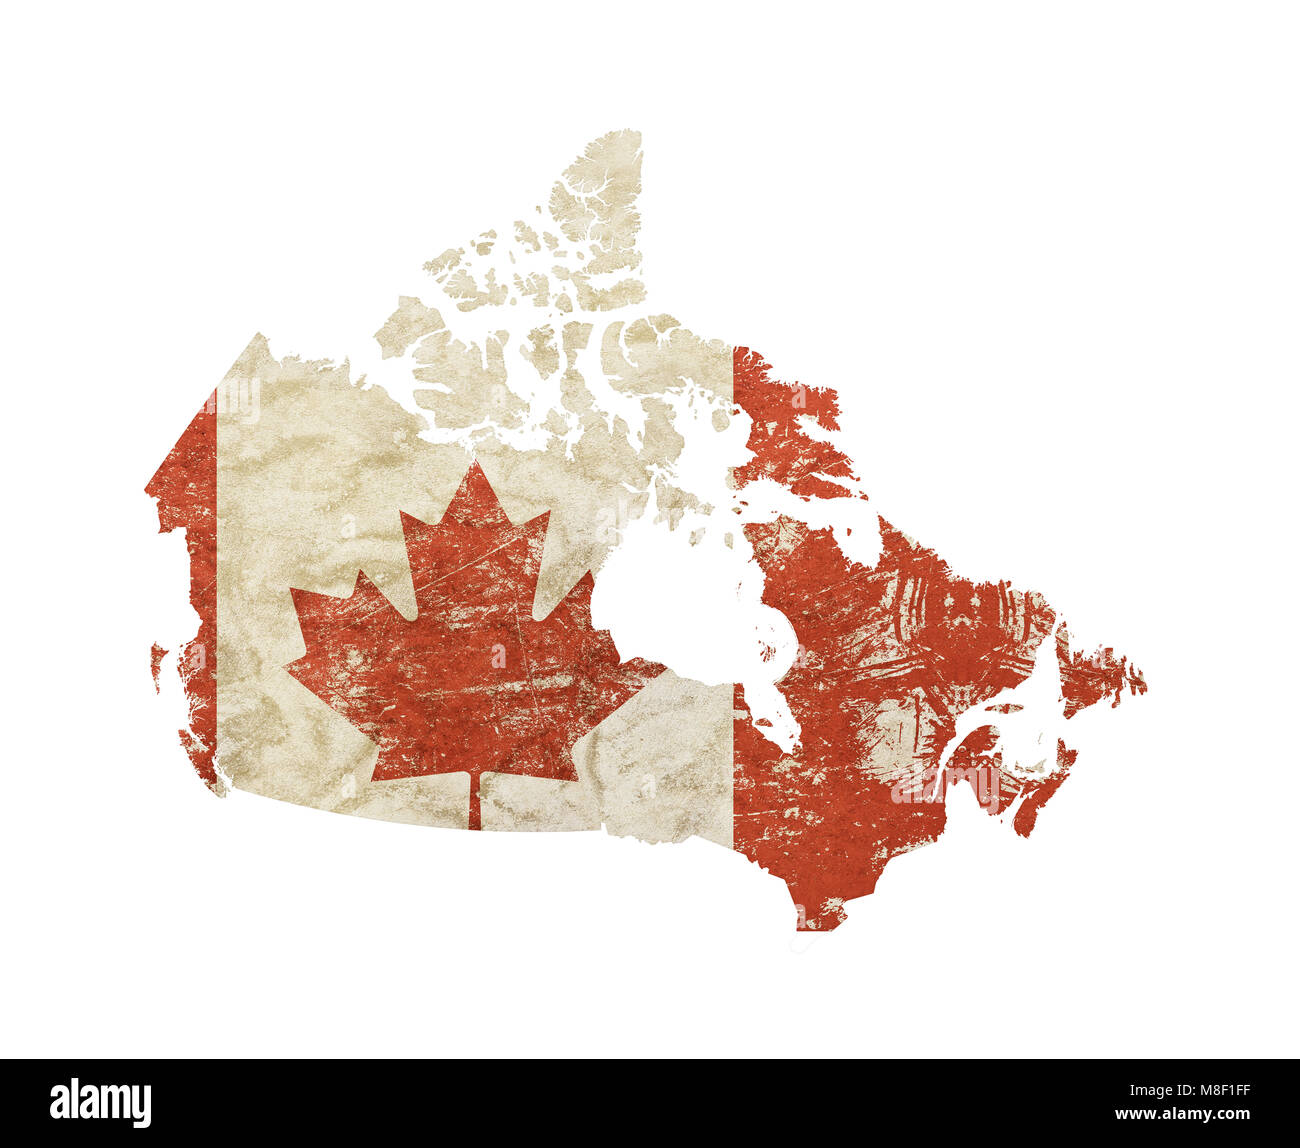 Canada mappa vecchia forma vintage grunge sporco sbiadito shabby distressed bandiera canadese con red maple leaf isolati su sfondo bianco Foto Stock